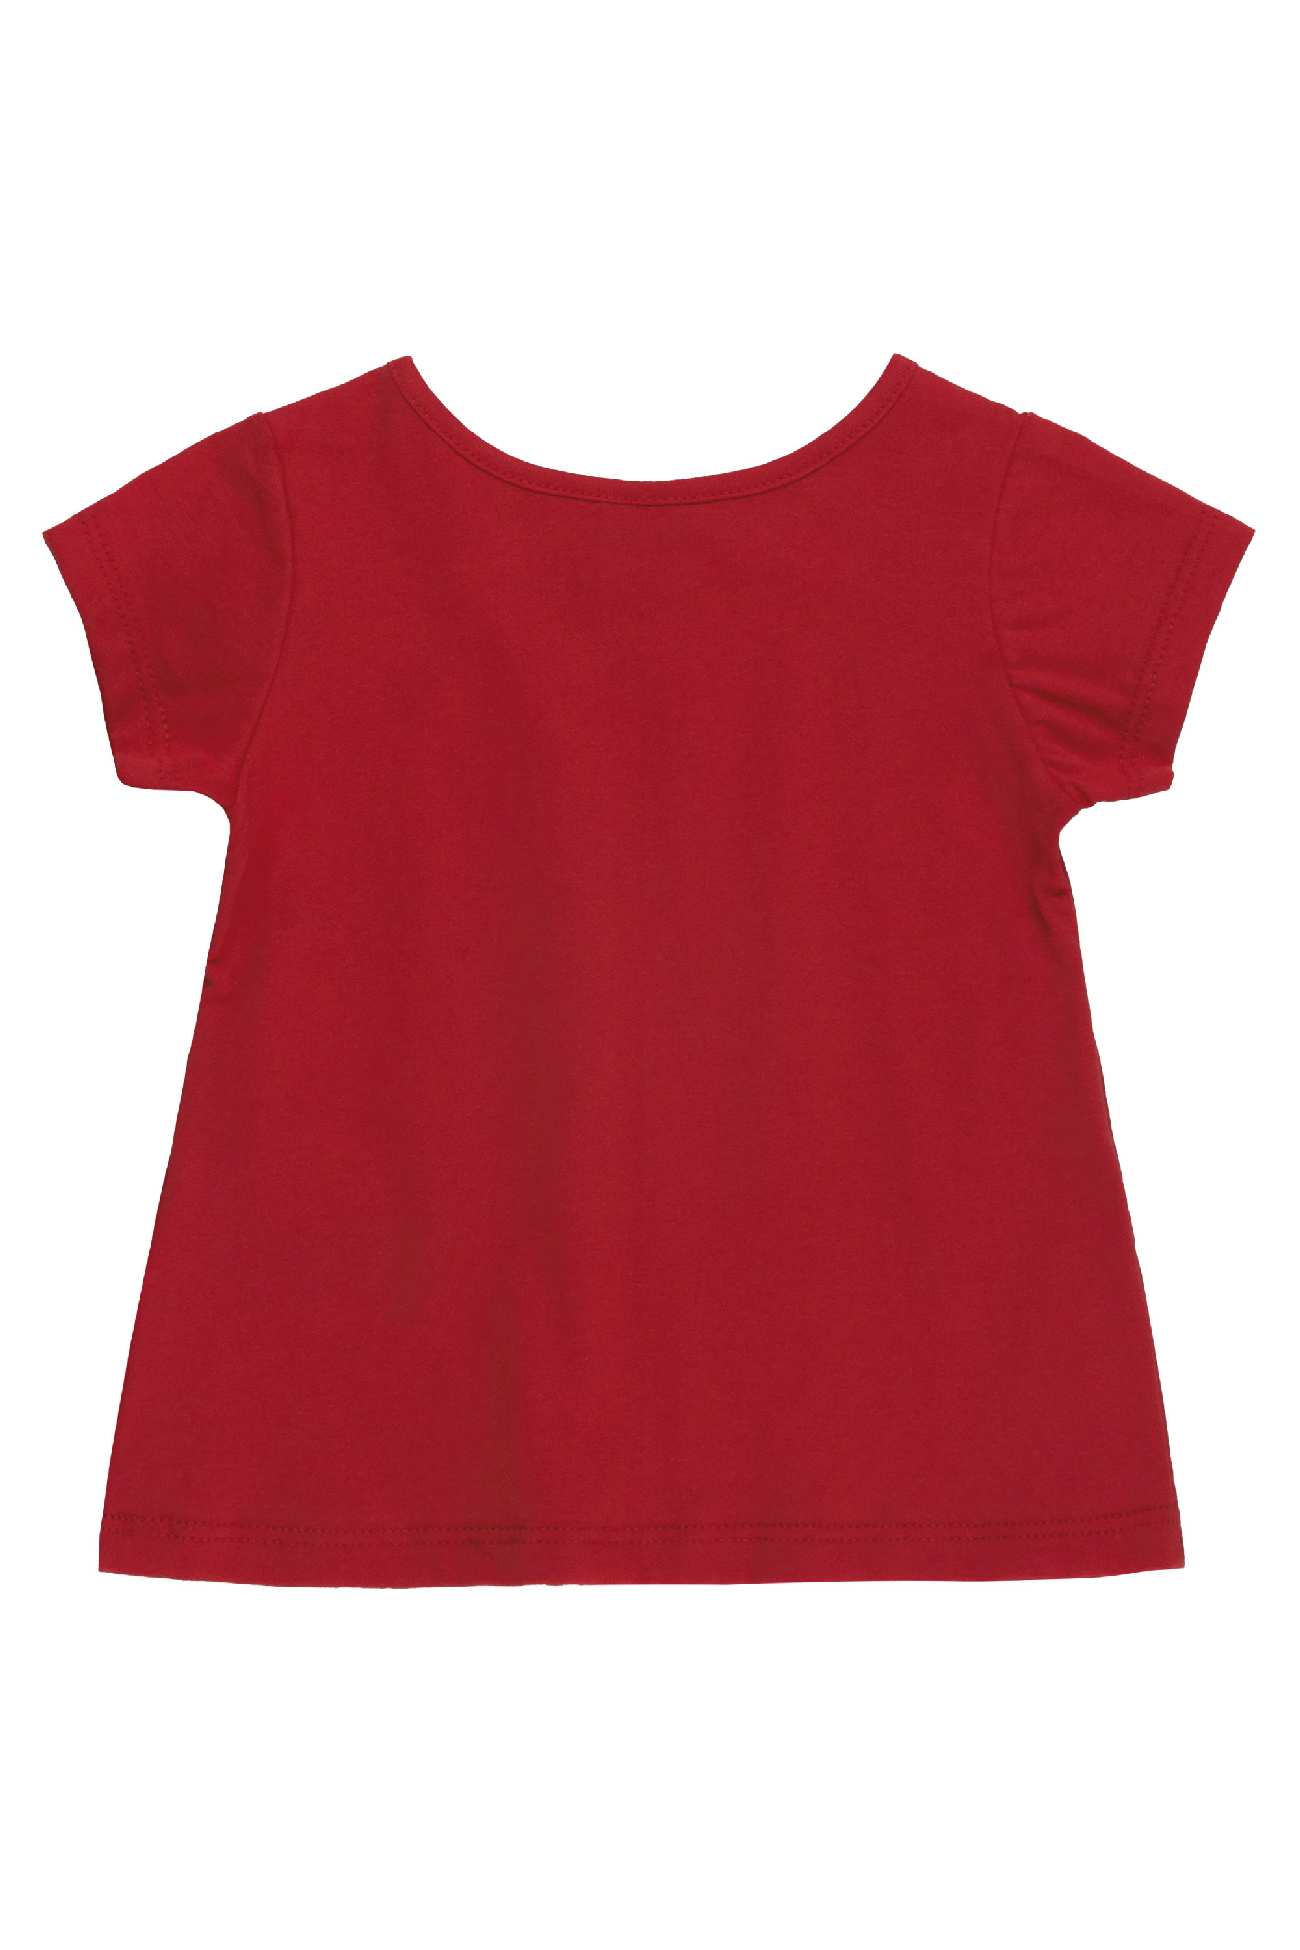 Komplet dziewczęcy, bluzka z krótkim rękawem i legginsy, czerwony, Bee Loop